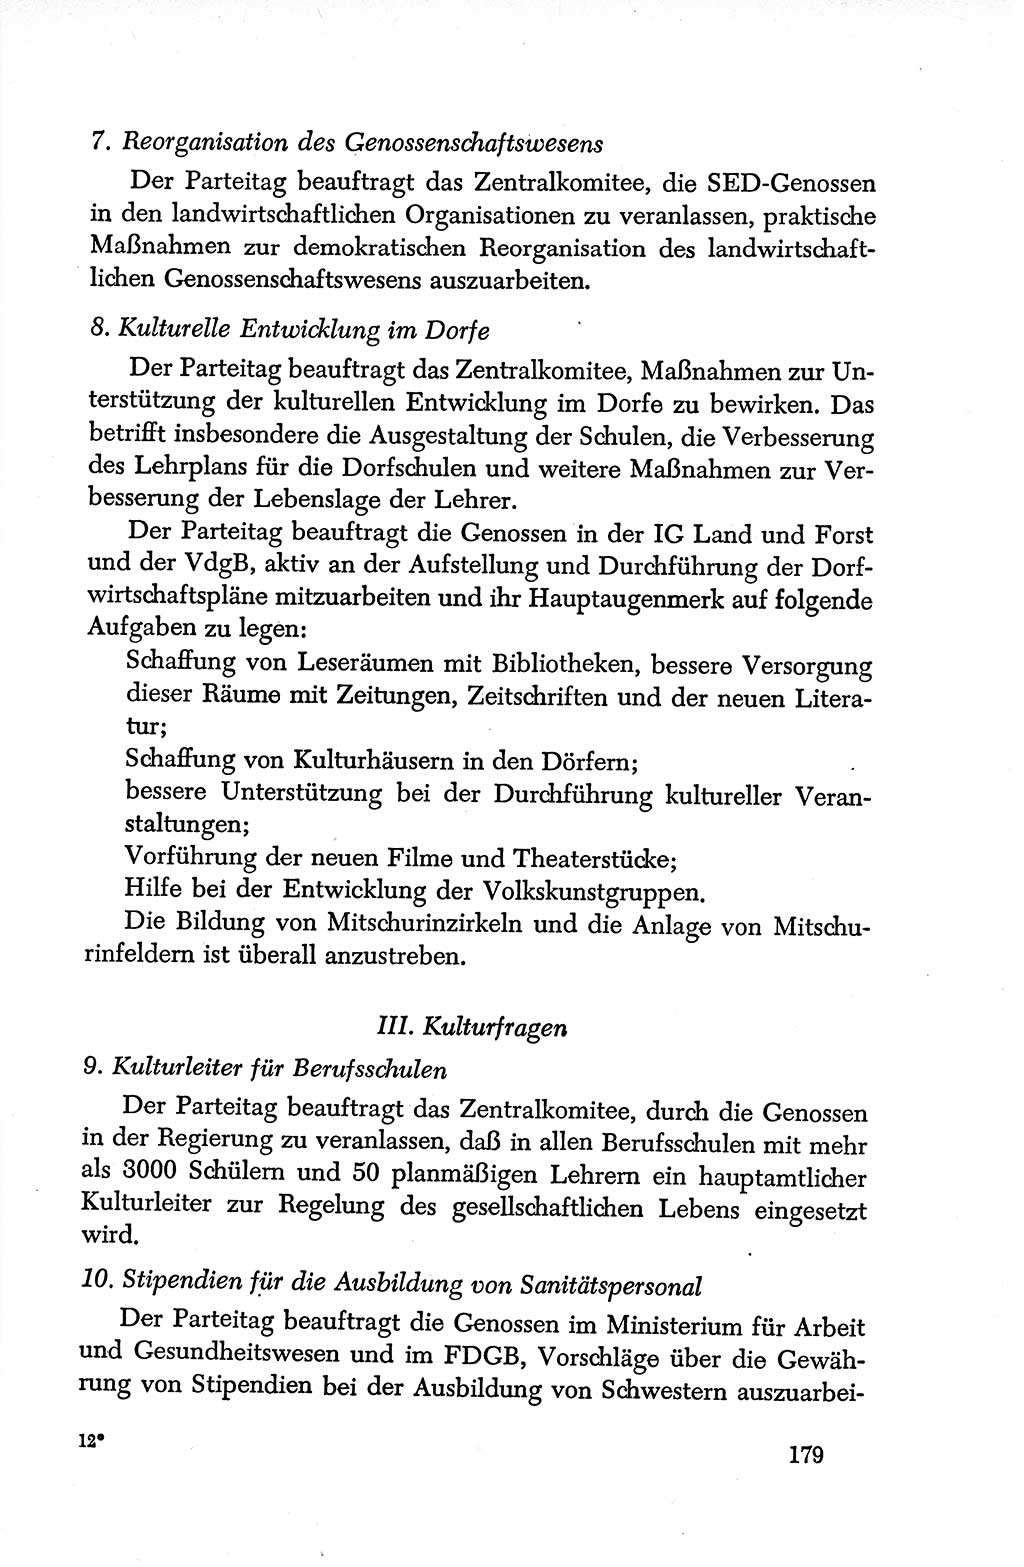 Dokumente der Sozialistischen Einheitspartei Deutschlands (SED) [Deutsche Demokratische Republik (DDR)] 1950-1952, Seite 179 (Dok. SED DDR 1950-1952, S. 179)